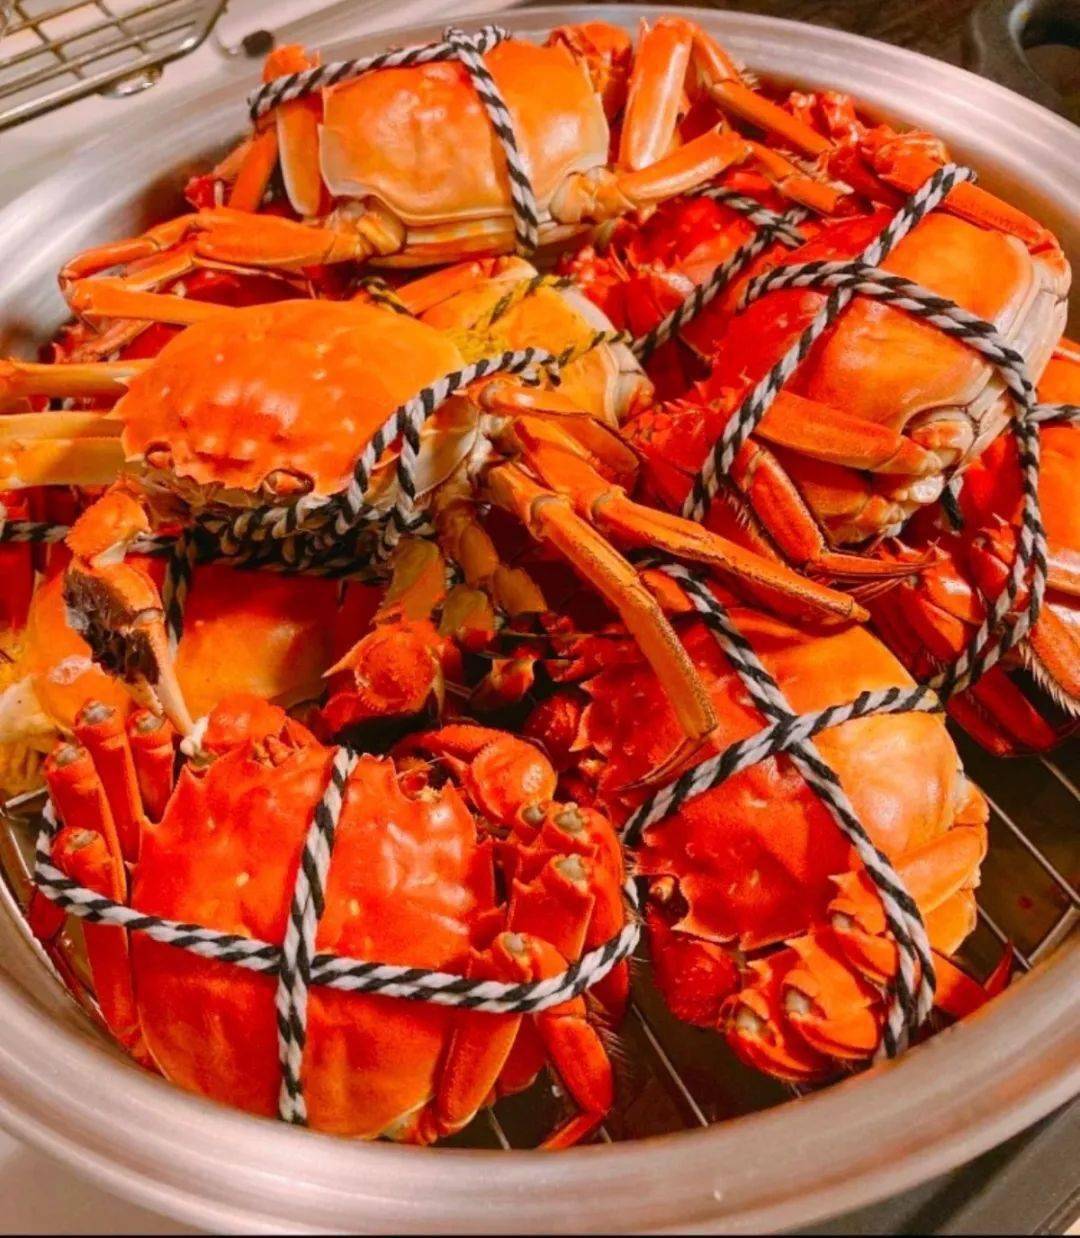 又到了吃大闸蟹的季节,孕妈妈能吃大闸蟹吗?